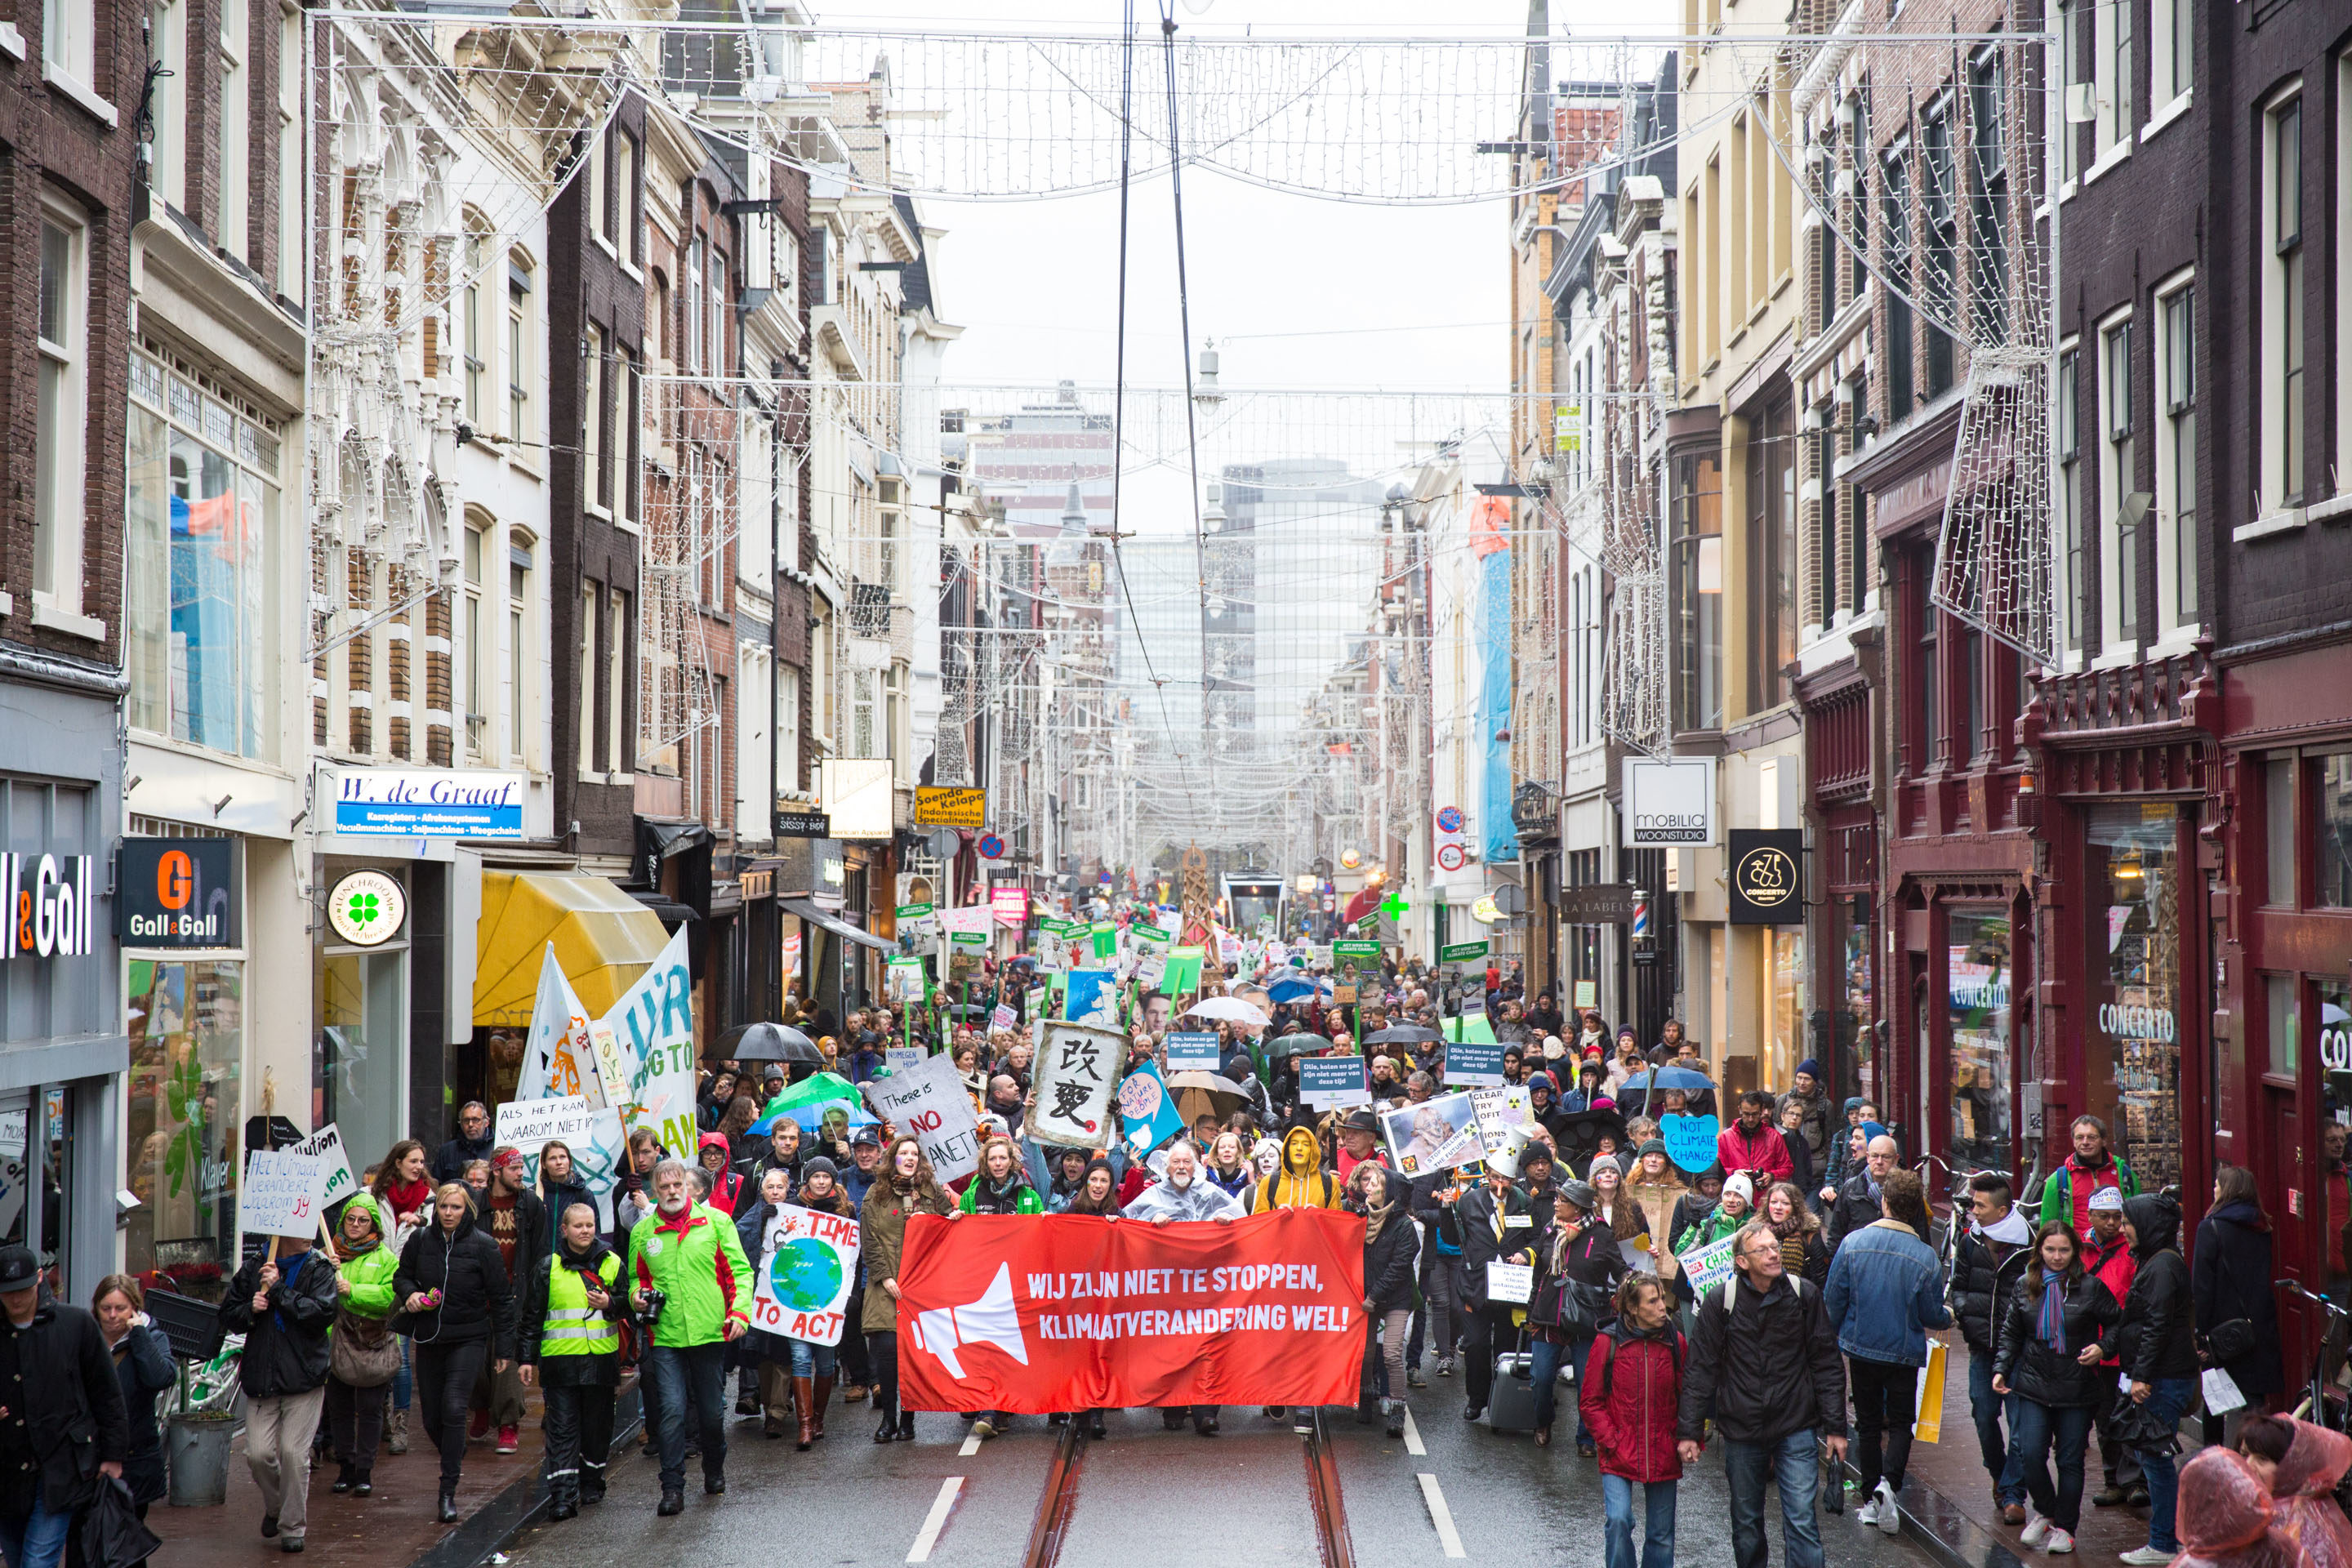 Klimaatparade-credit-Chantal-Bekker-Greenpeace-2880px